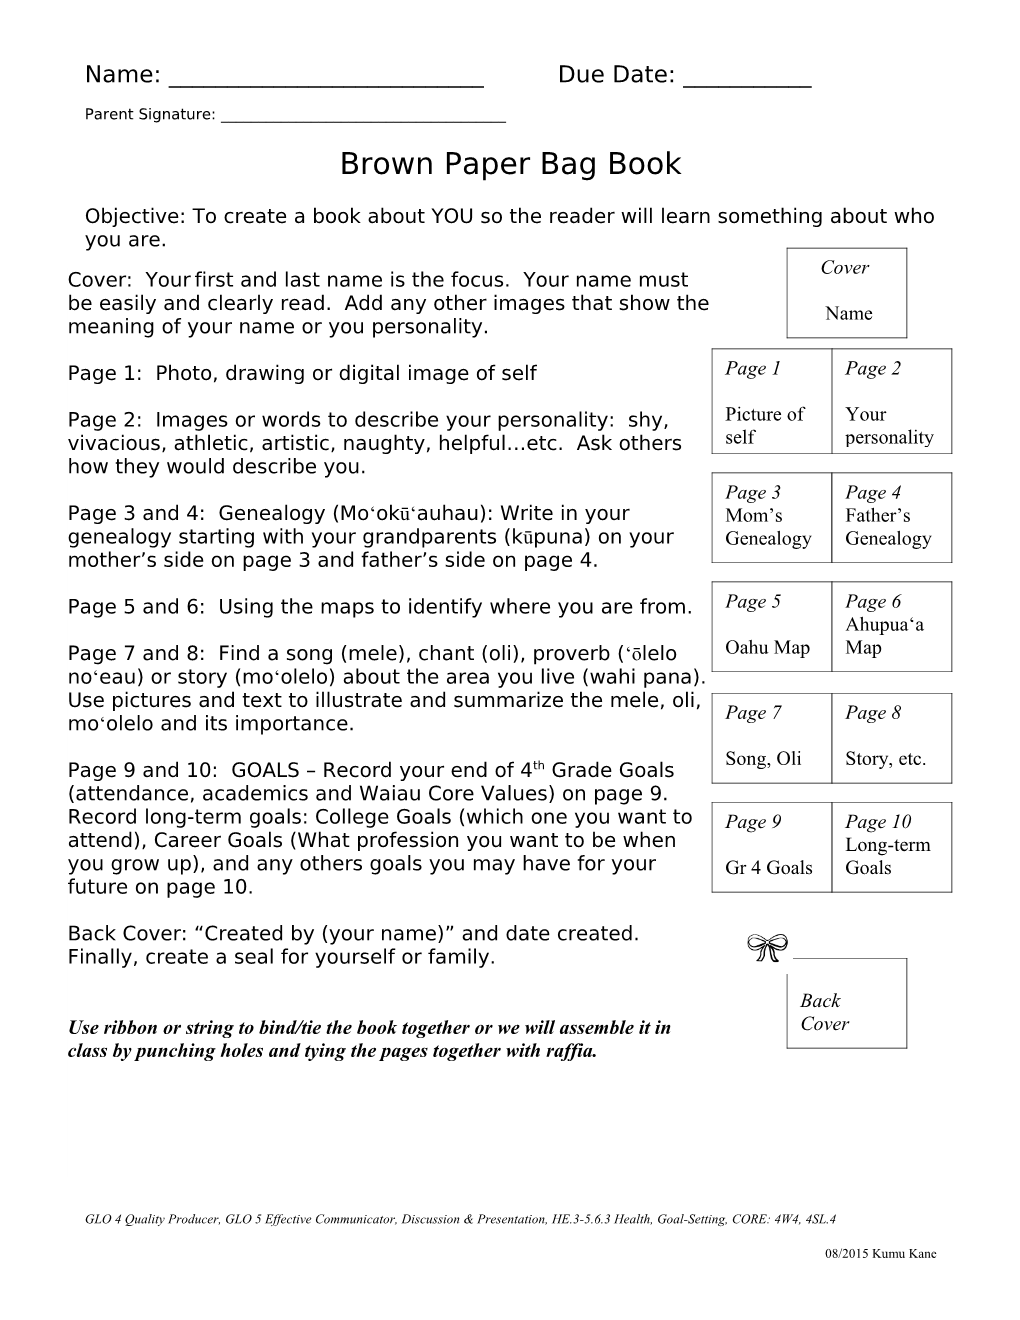 Brown Paper Bag Book